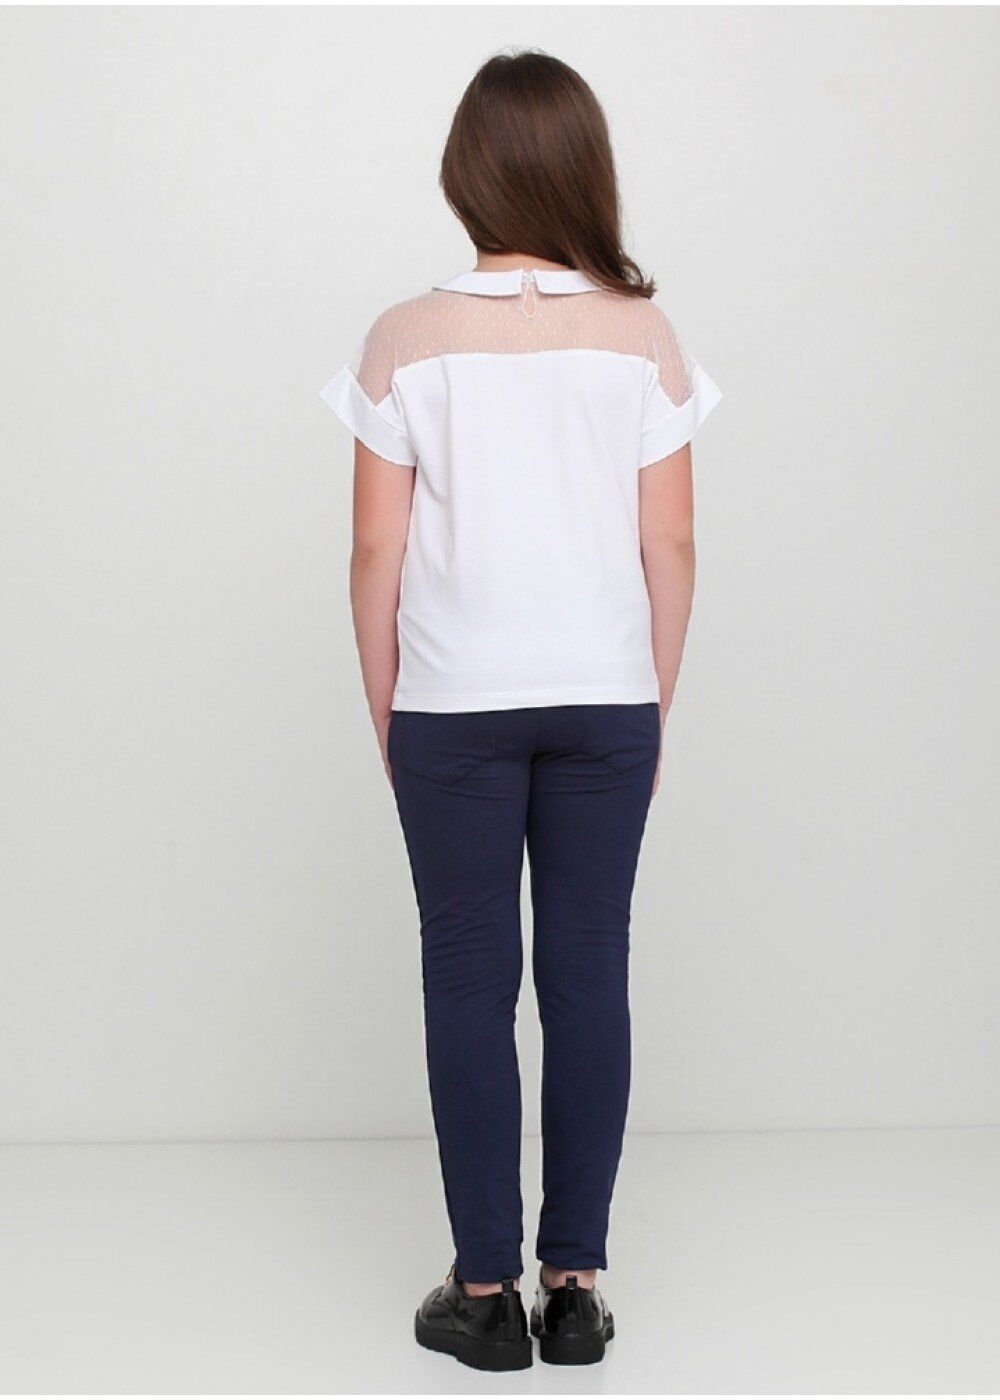 Трикотажная блузка для девочки Vidoli белая 19596 - размеры